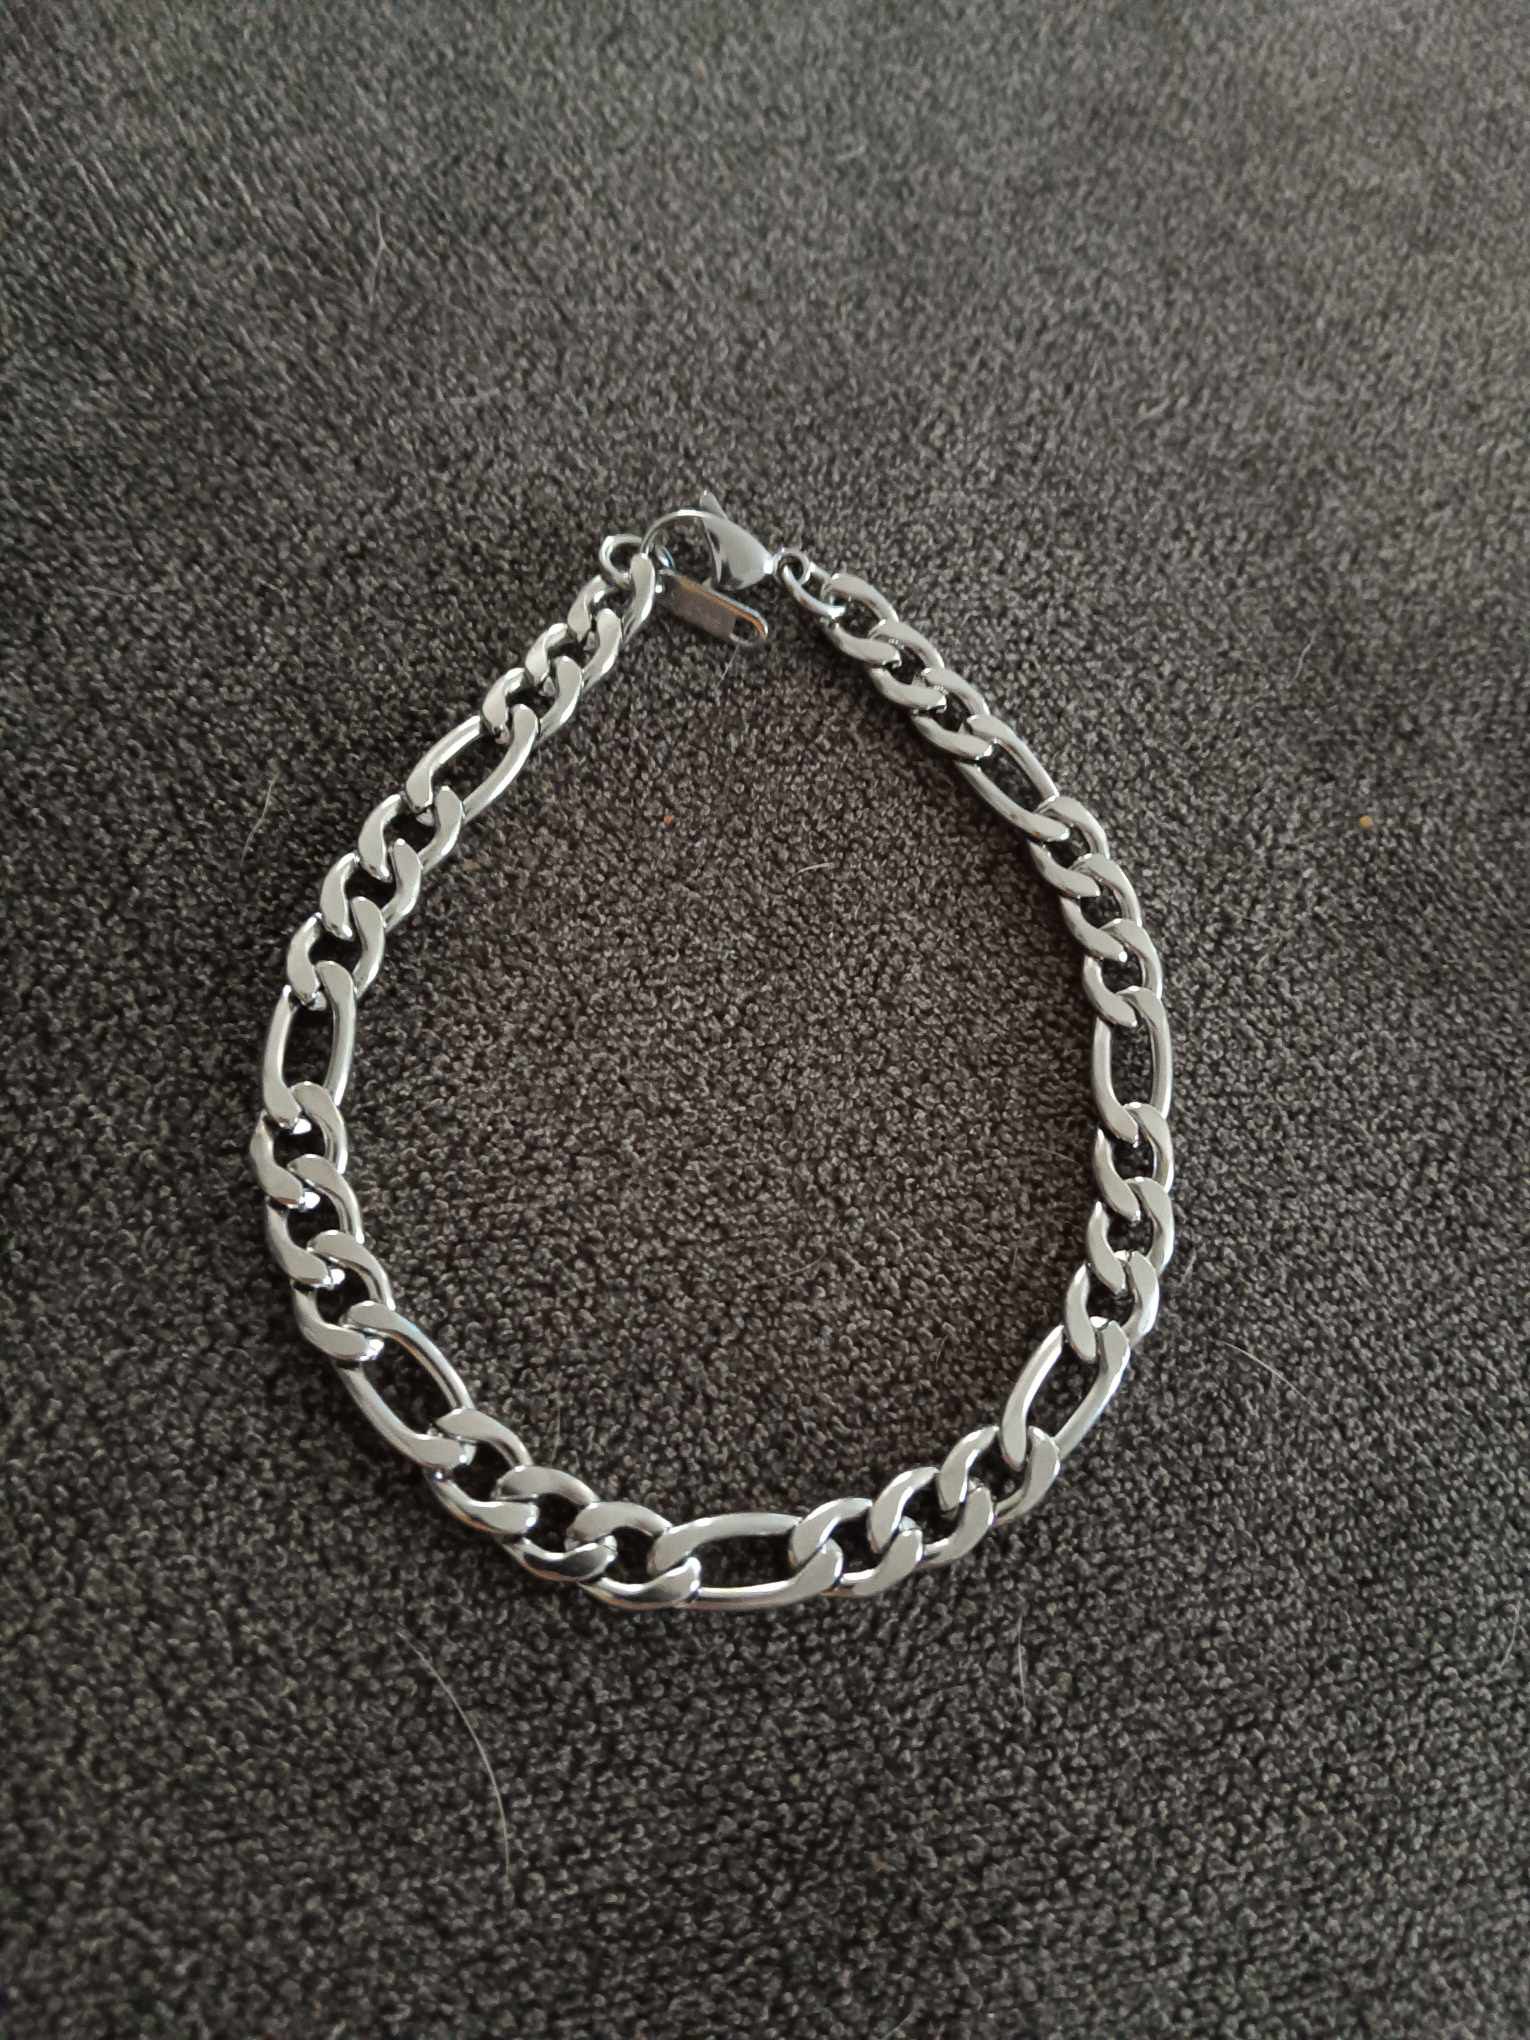 9” Stainless Steel Figaro Bracelet 